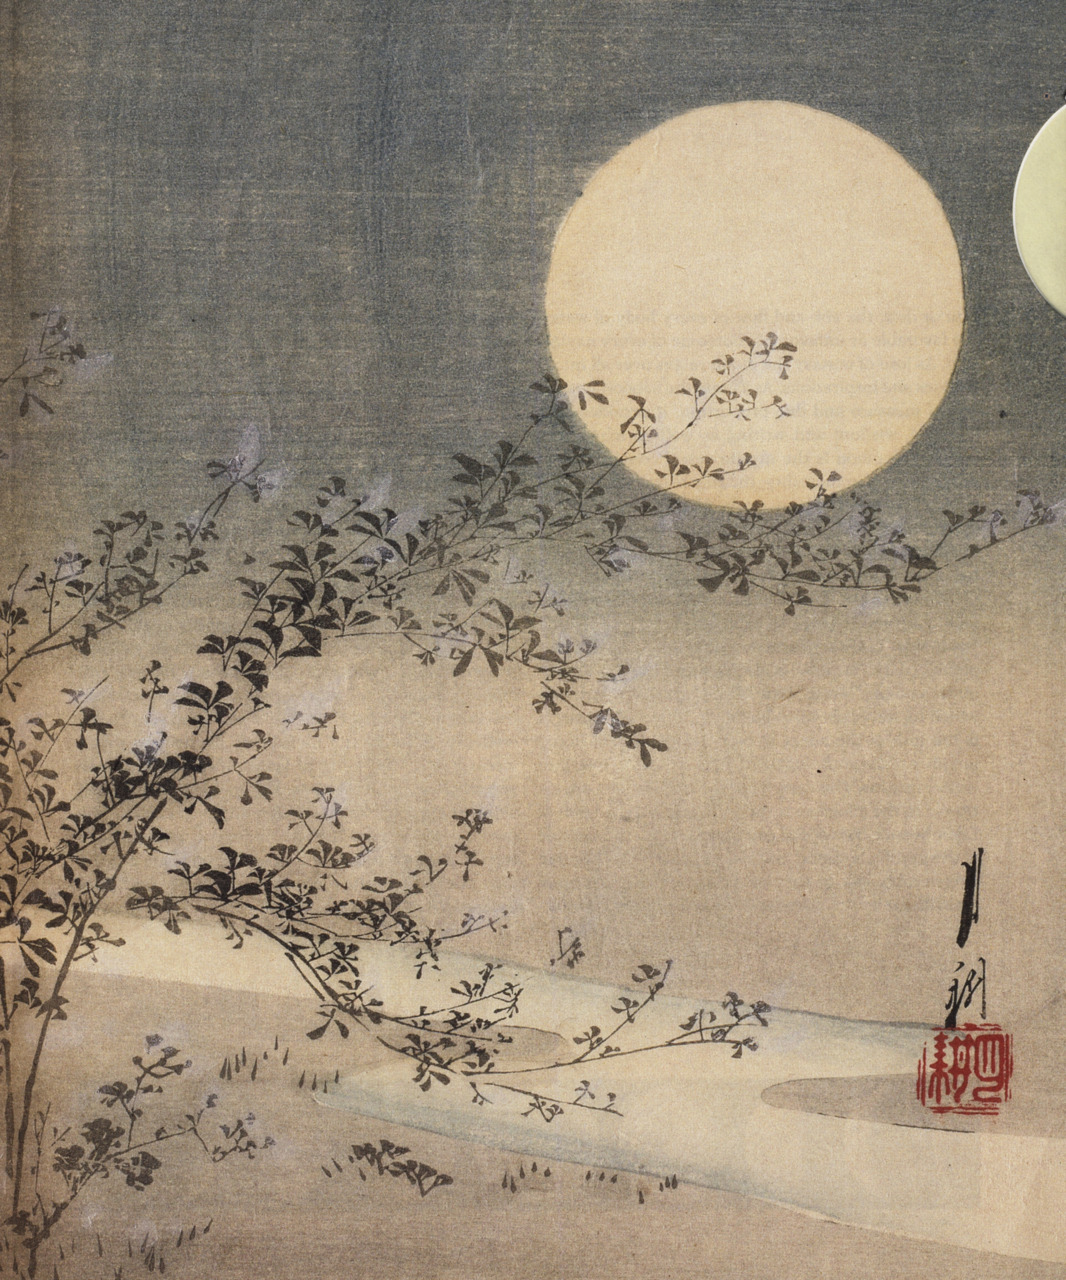 La luna e l'arte giapponese